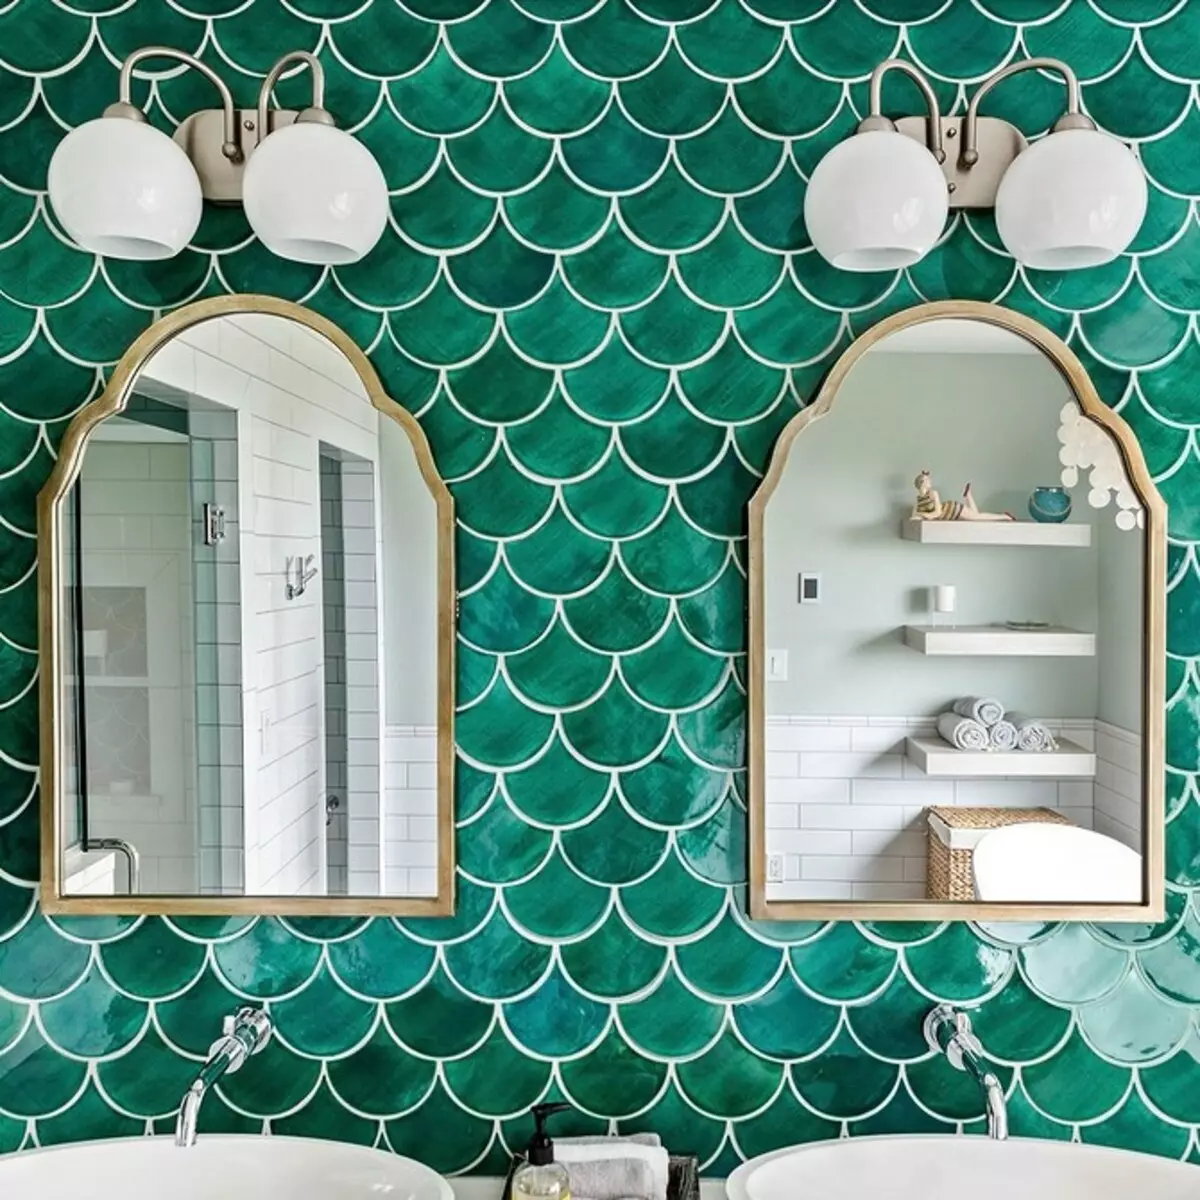 Elegante y hermoso: Mosaico en el diseño del baño (66 fotos) 2724_66